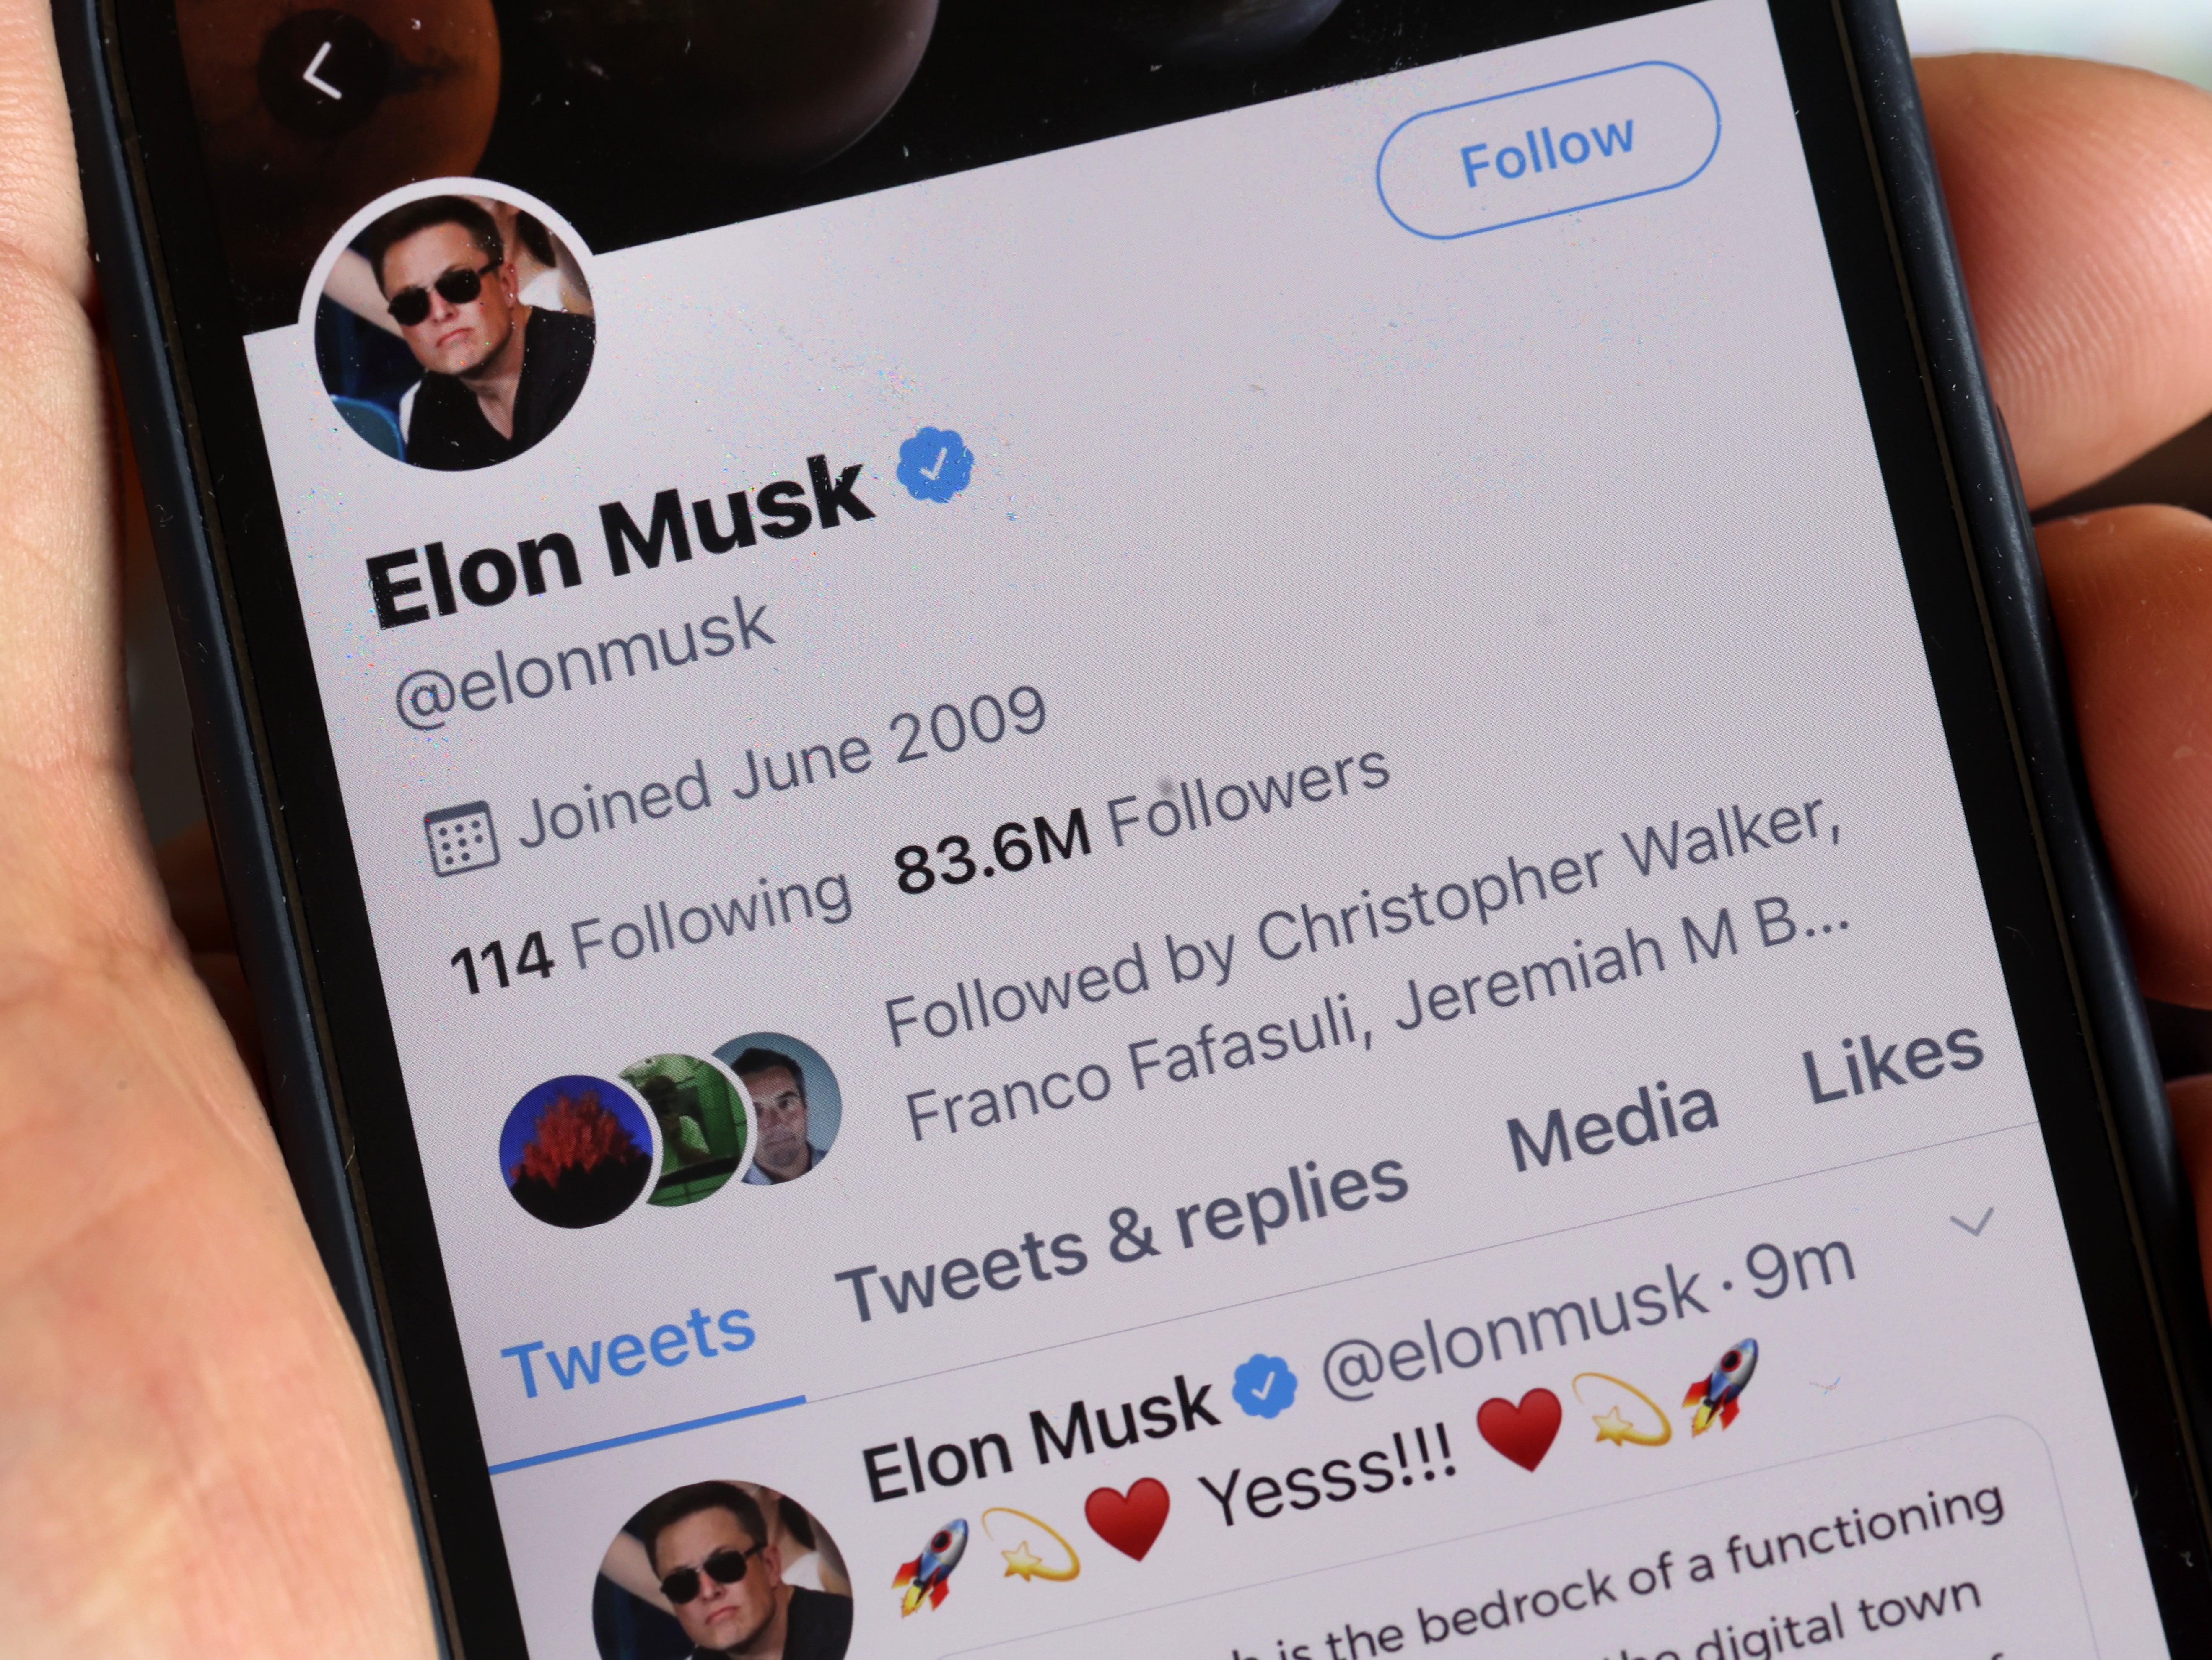 Elon Musk is set to buy Twitter for $44 billion